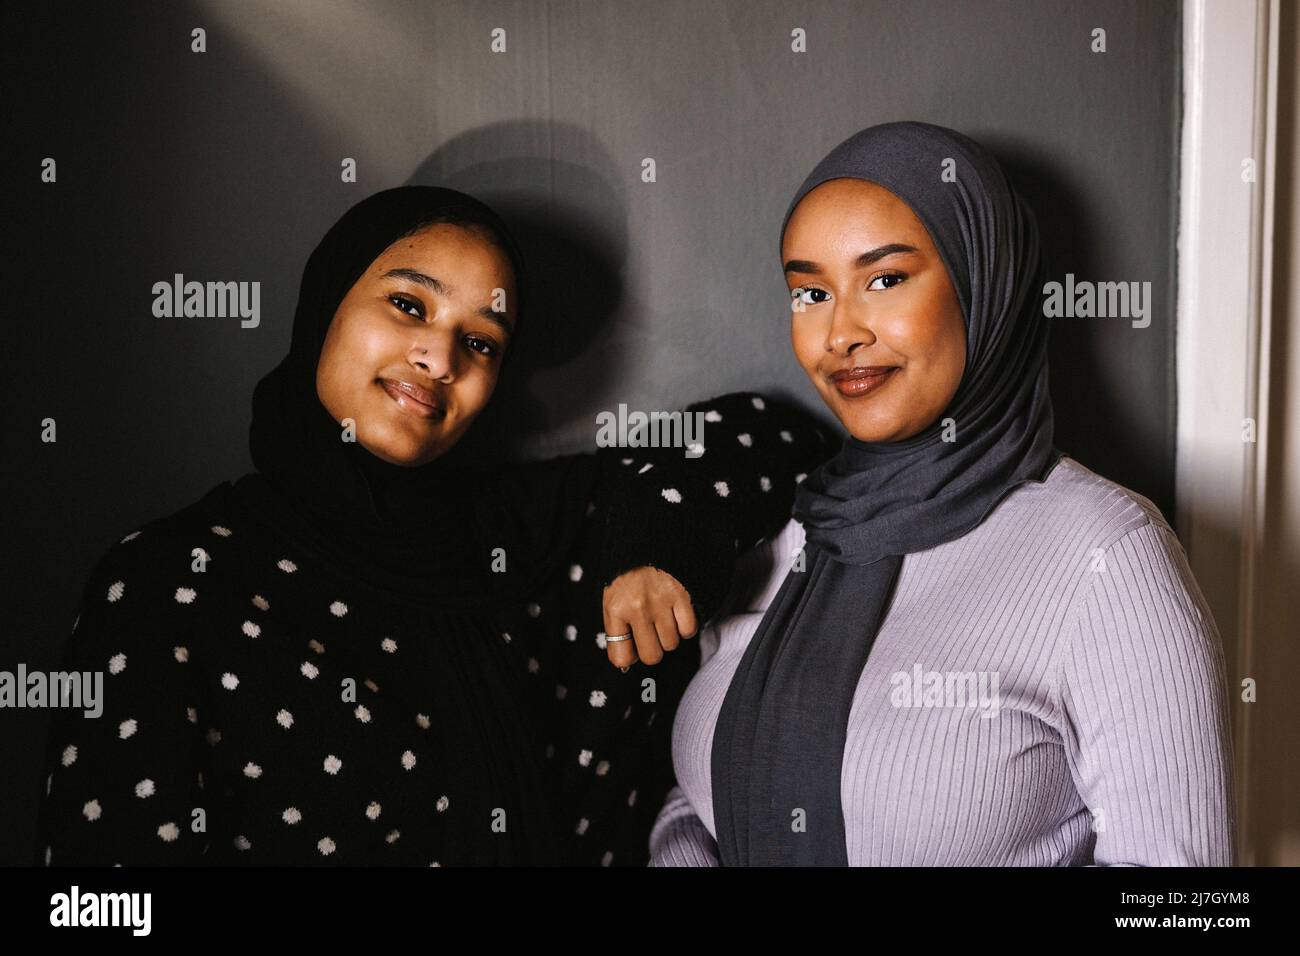 Lächelnde junge Frauen in Hijabs, die zu Hause vor der Wand stehen Stockfoto